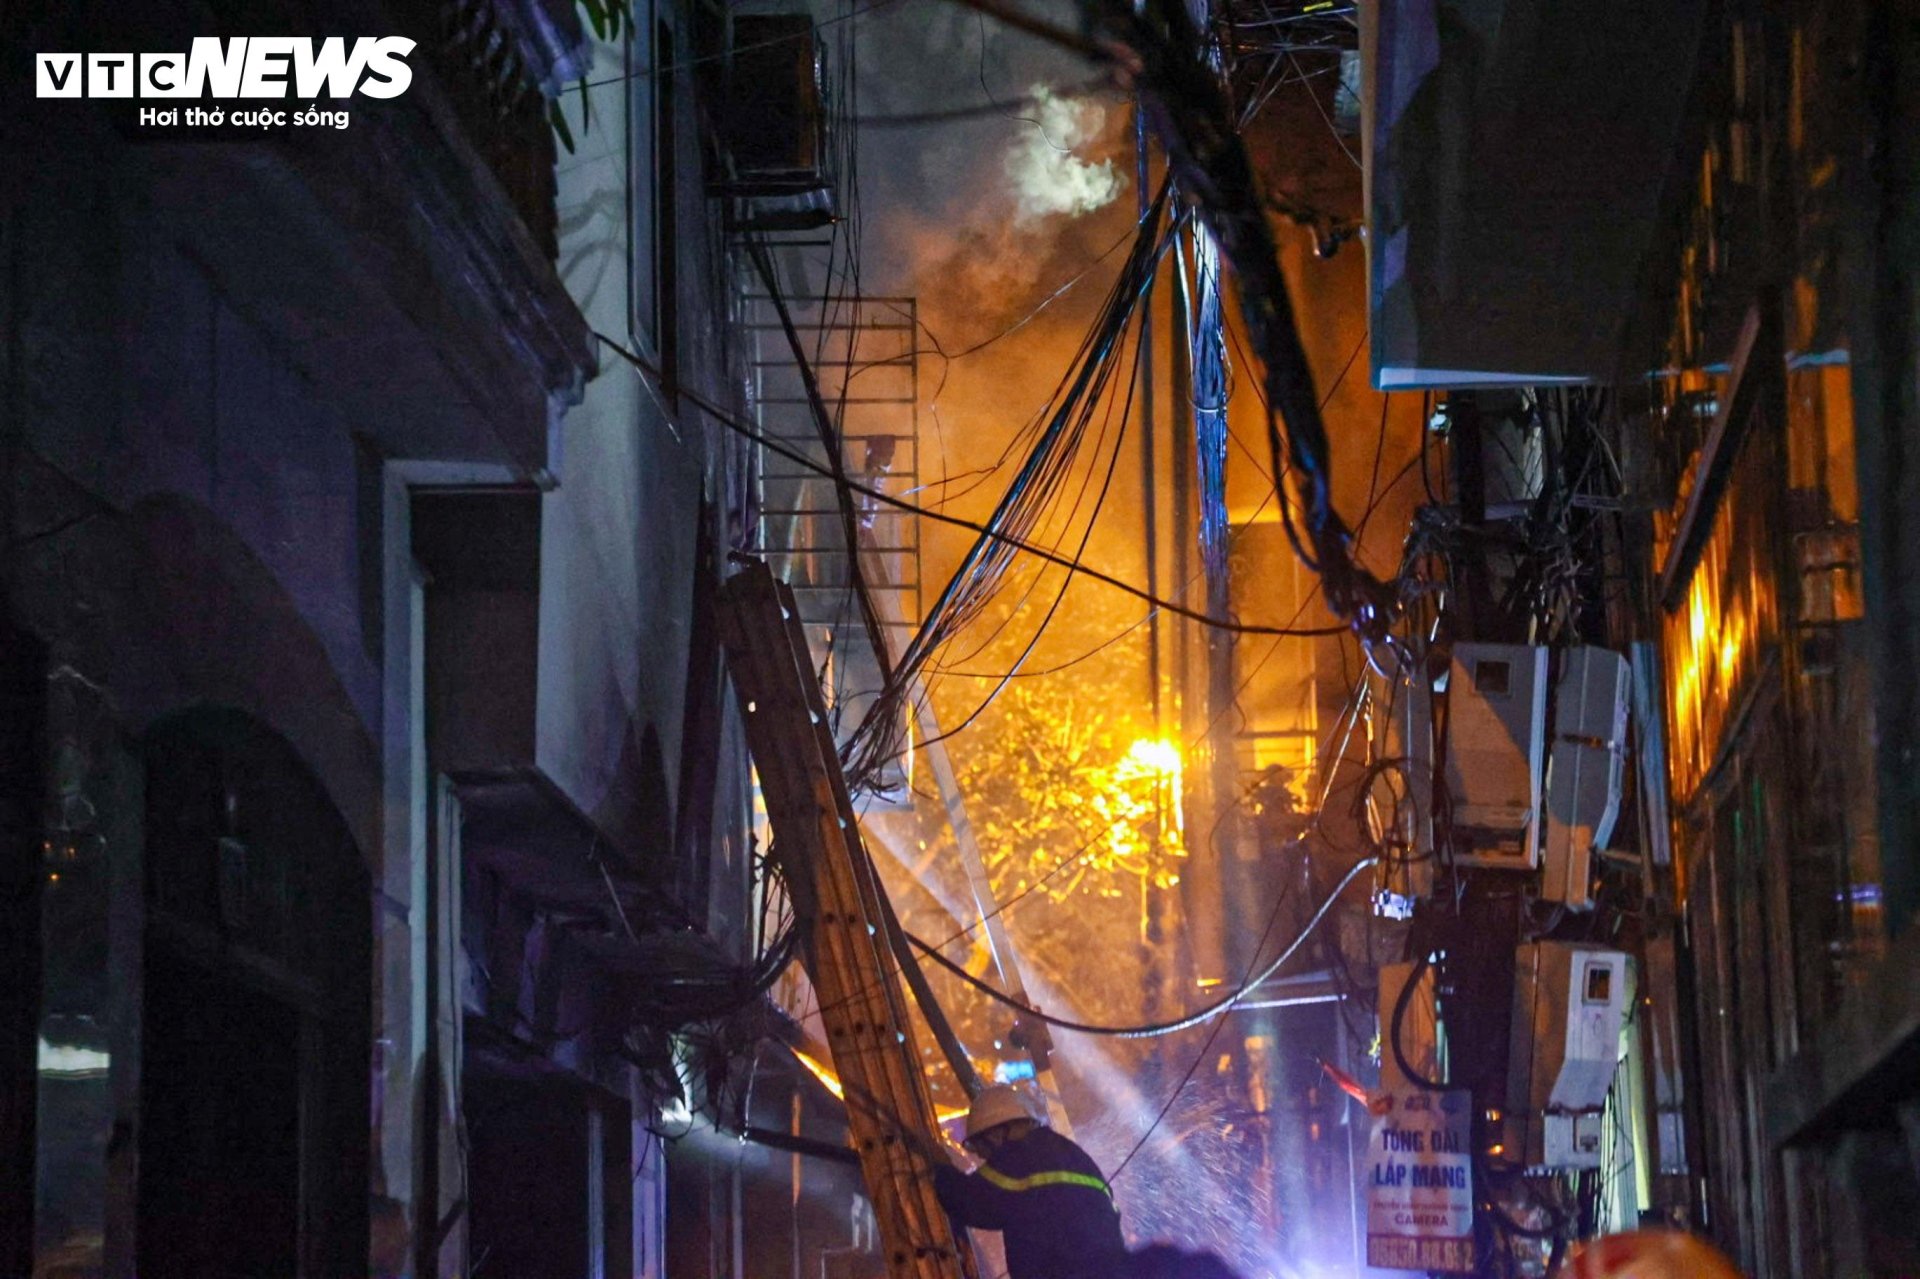 Hiện trường vụ cháy chung cư mini ở Hà Nội trong đêm, nhiều người ngất xỉu - Ảnh 5.